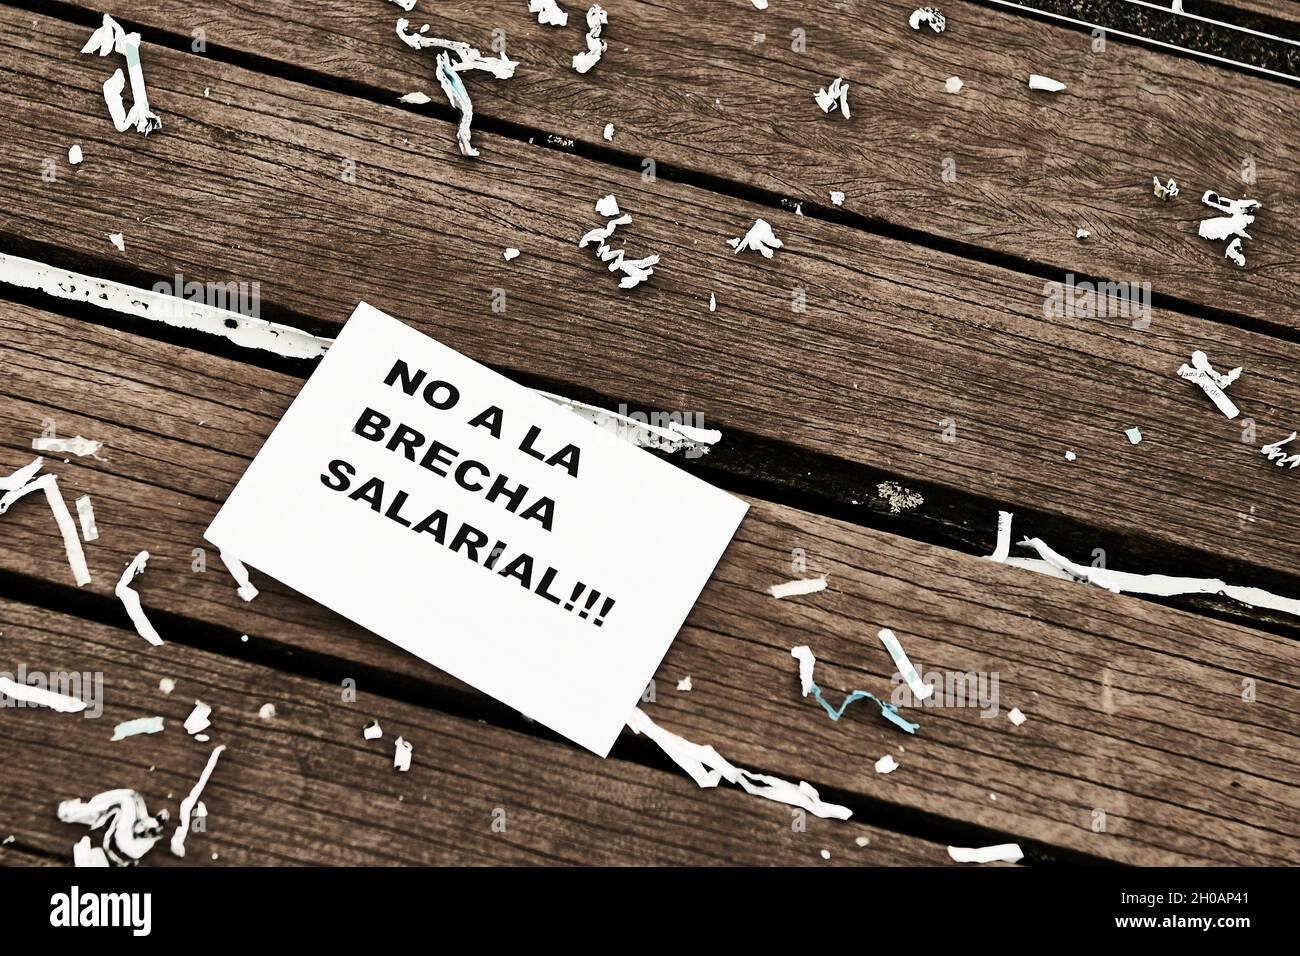 Documento sul pavimento con la frase "no a la Brecha salarial" Foto Stock